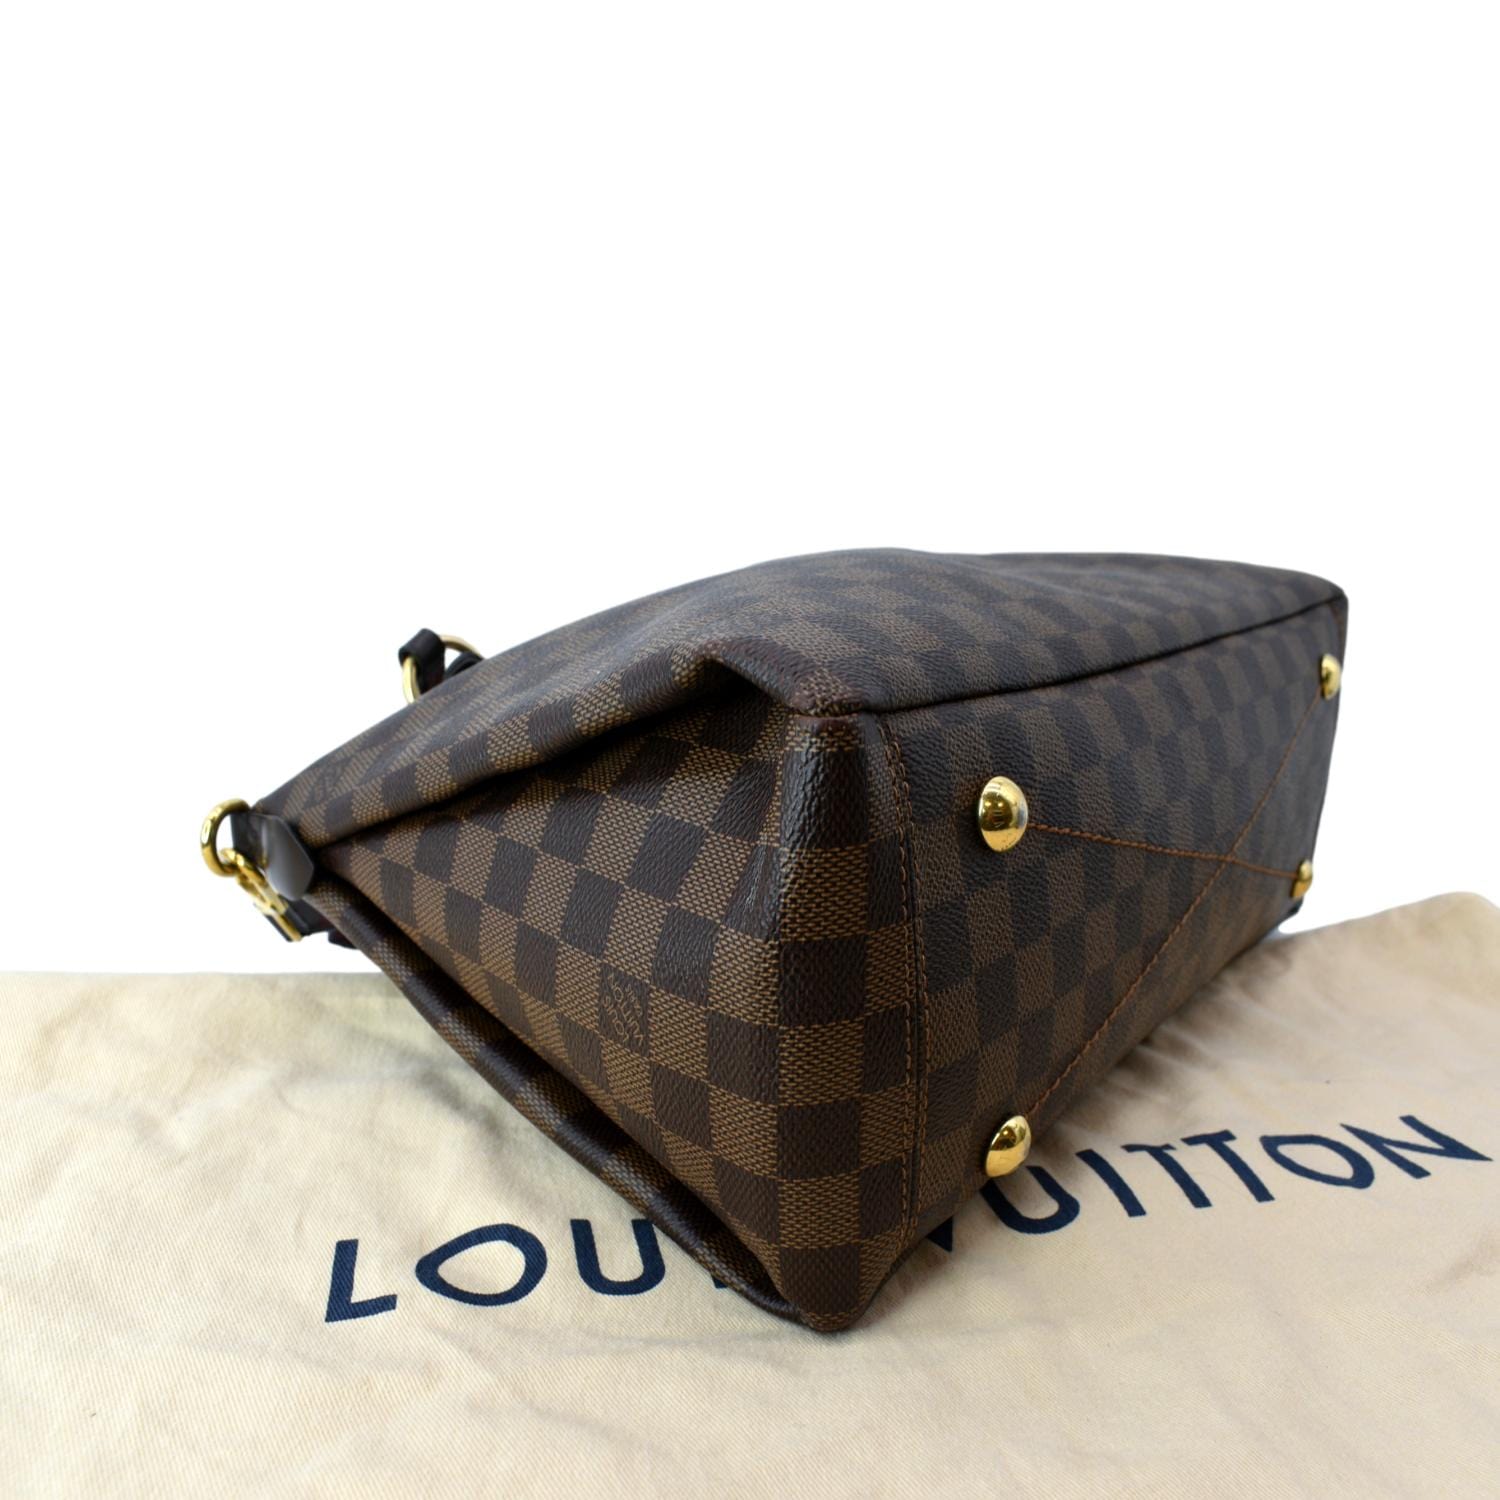 Louis Vuitton Lymington M40022 #louisvuitton #lv #lvbag #lvalmabb  #lvhandbag #lvlover #…